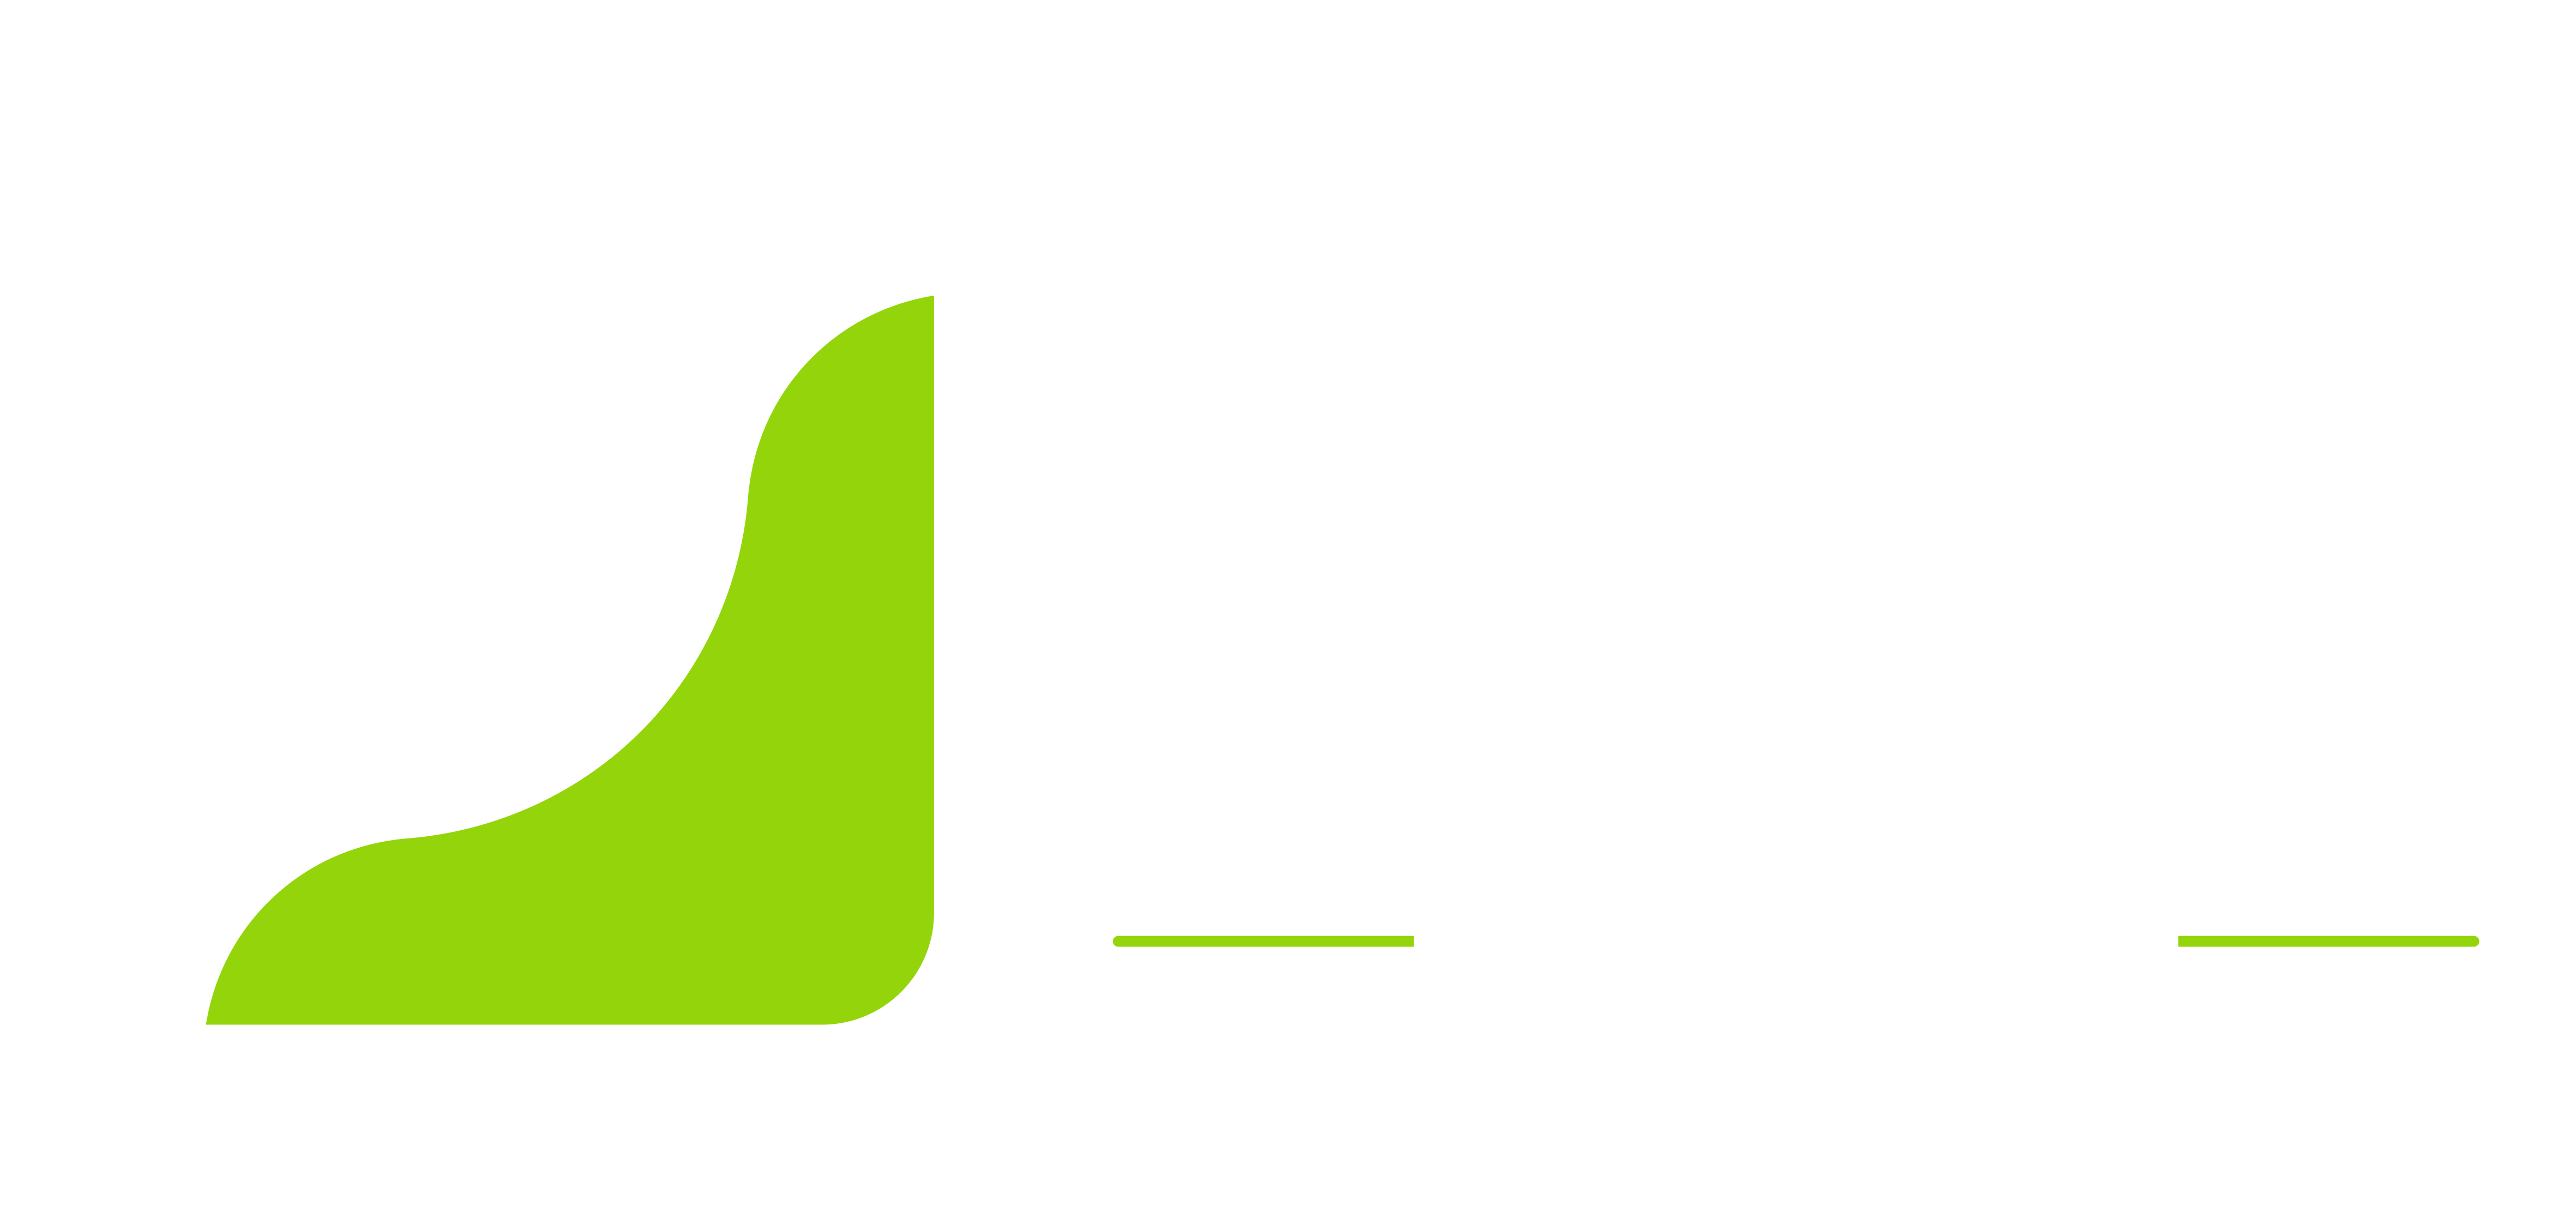 Logotipo Melhores Rodovias do Brasil